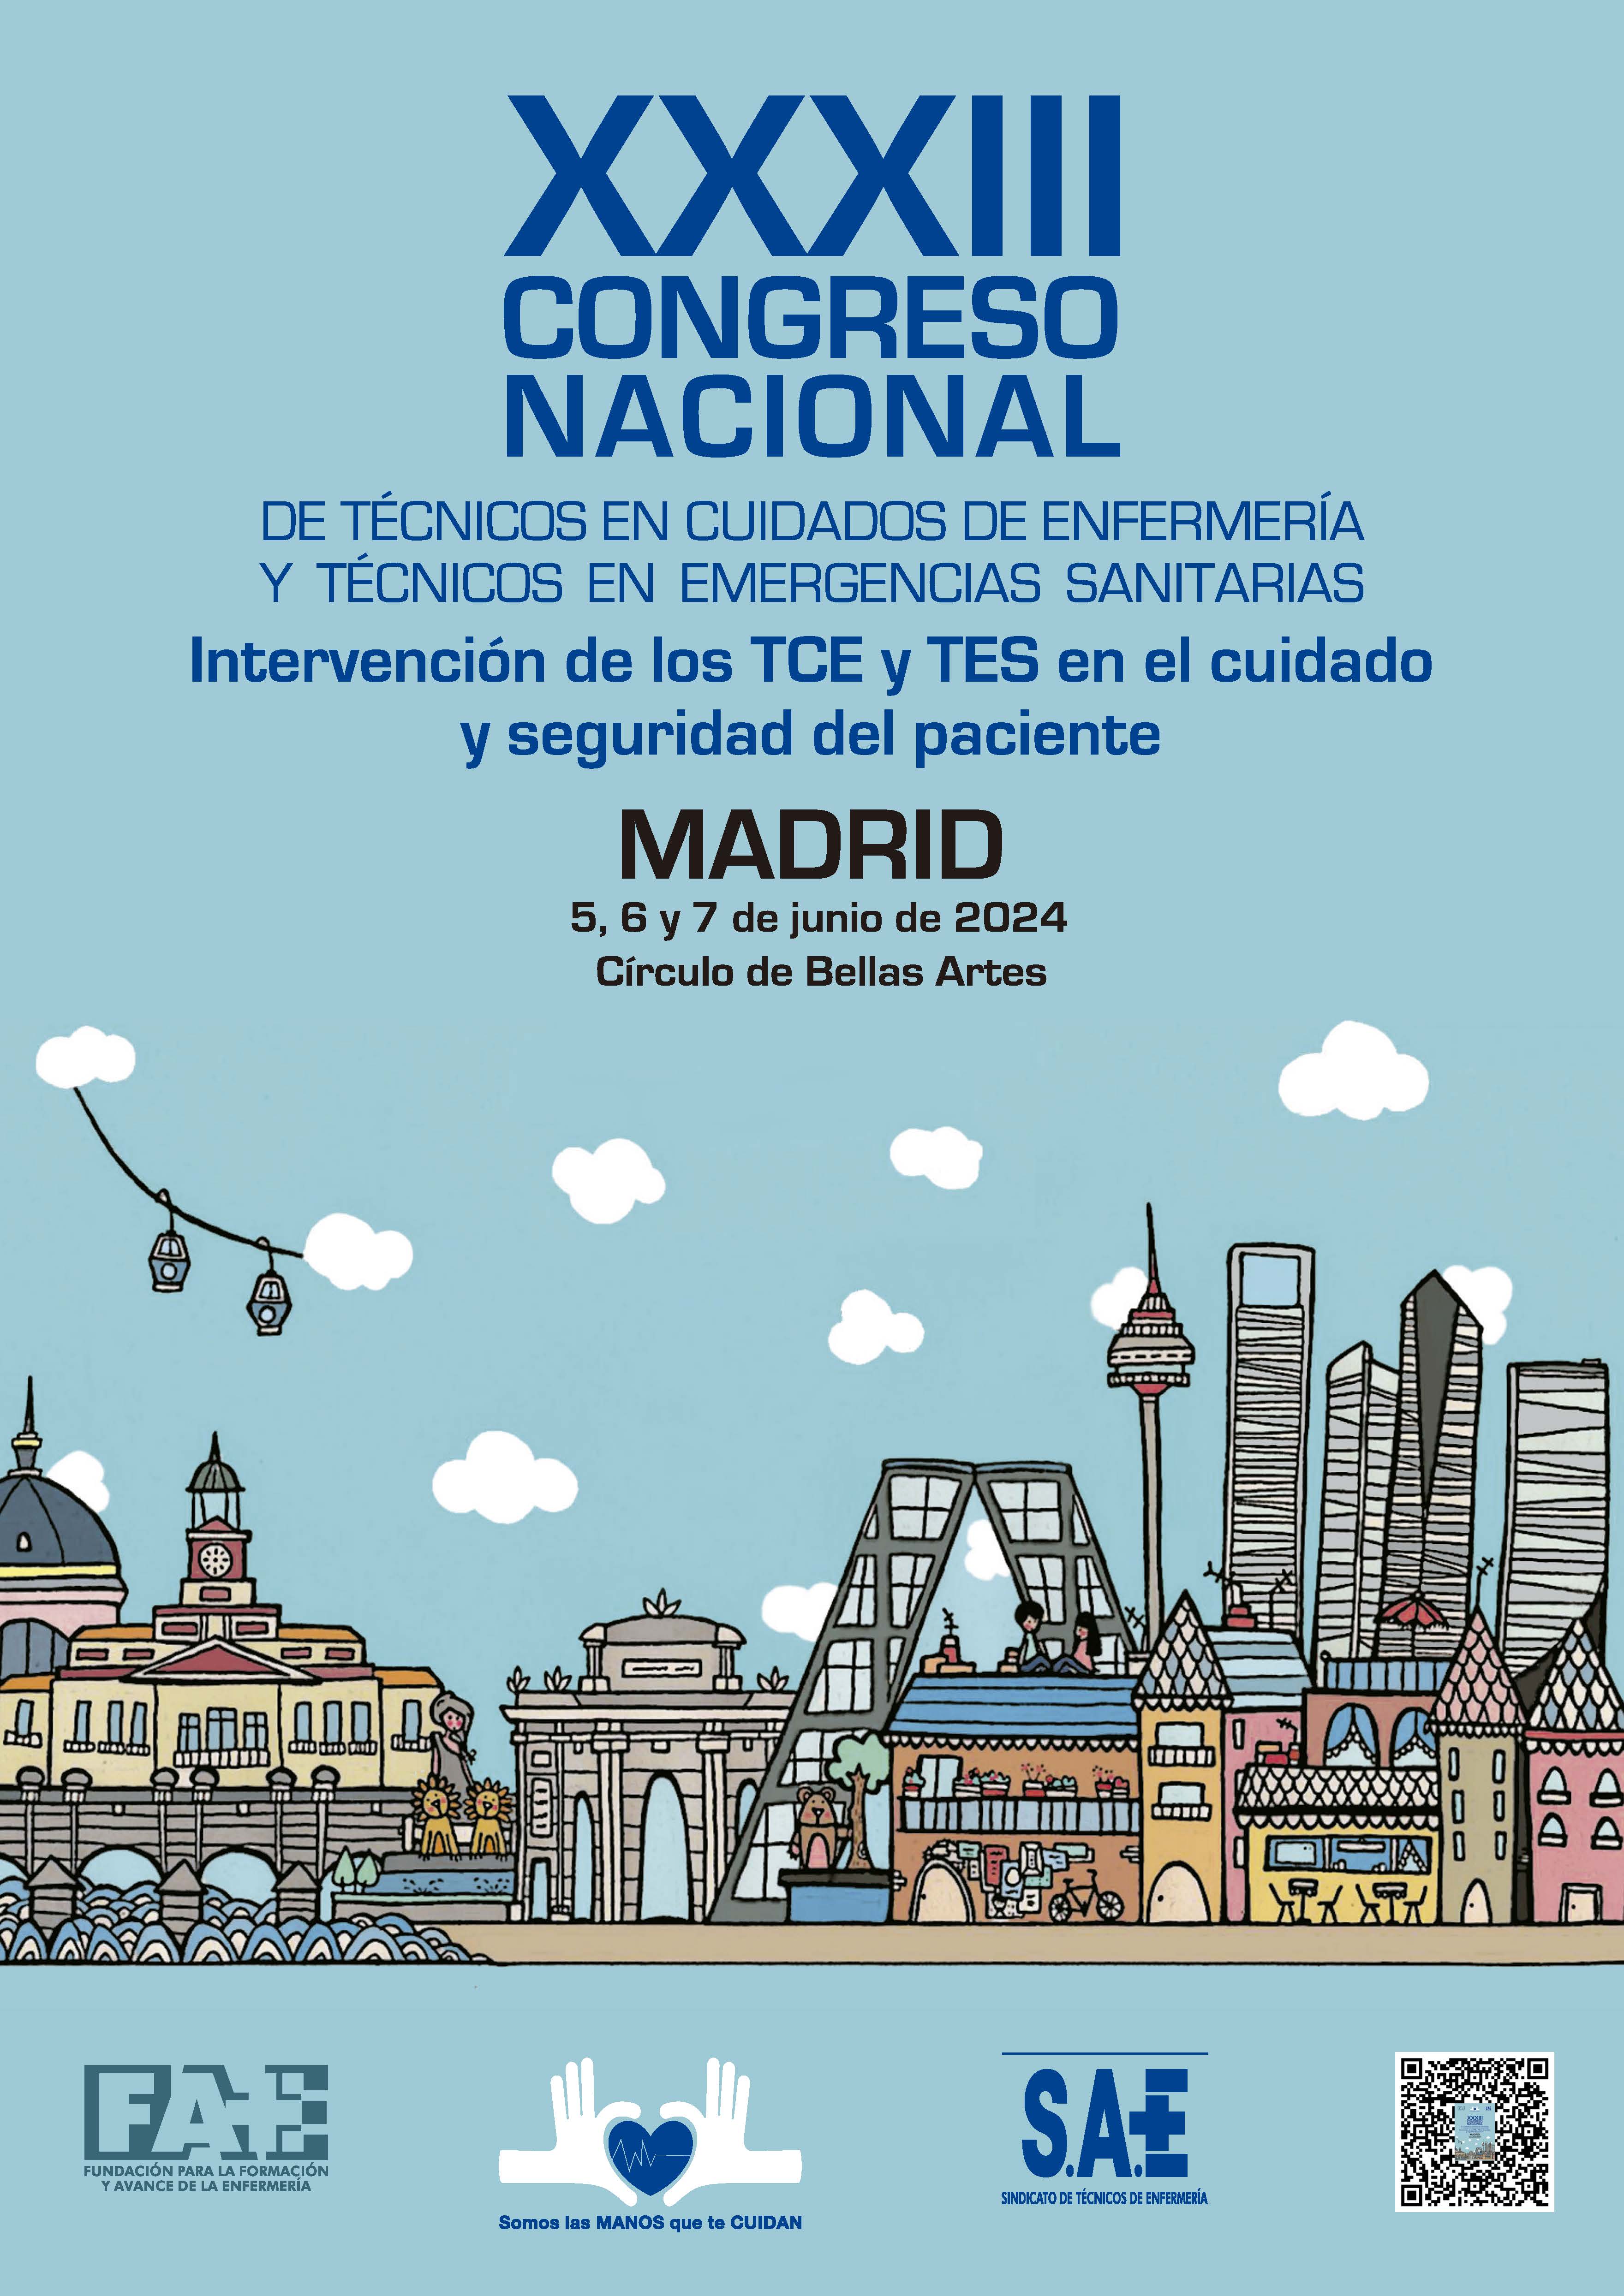 XXXIII Congreso Nacional de TCE y TES